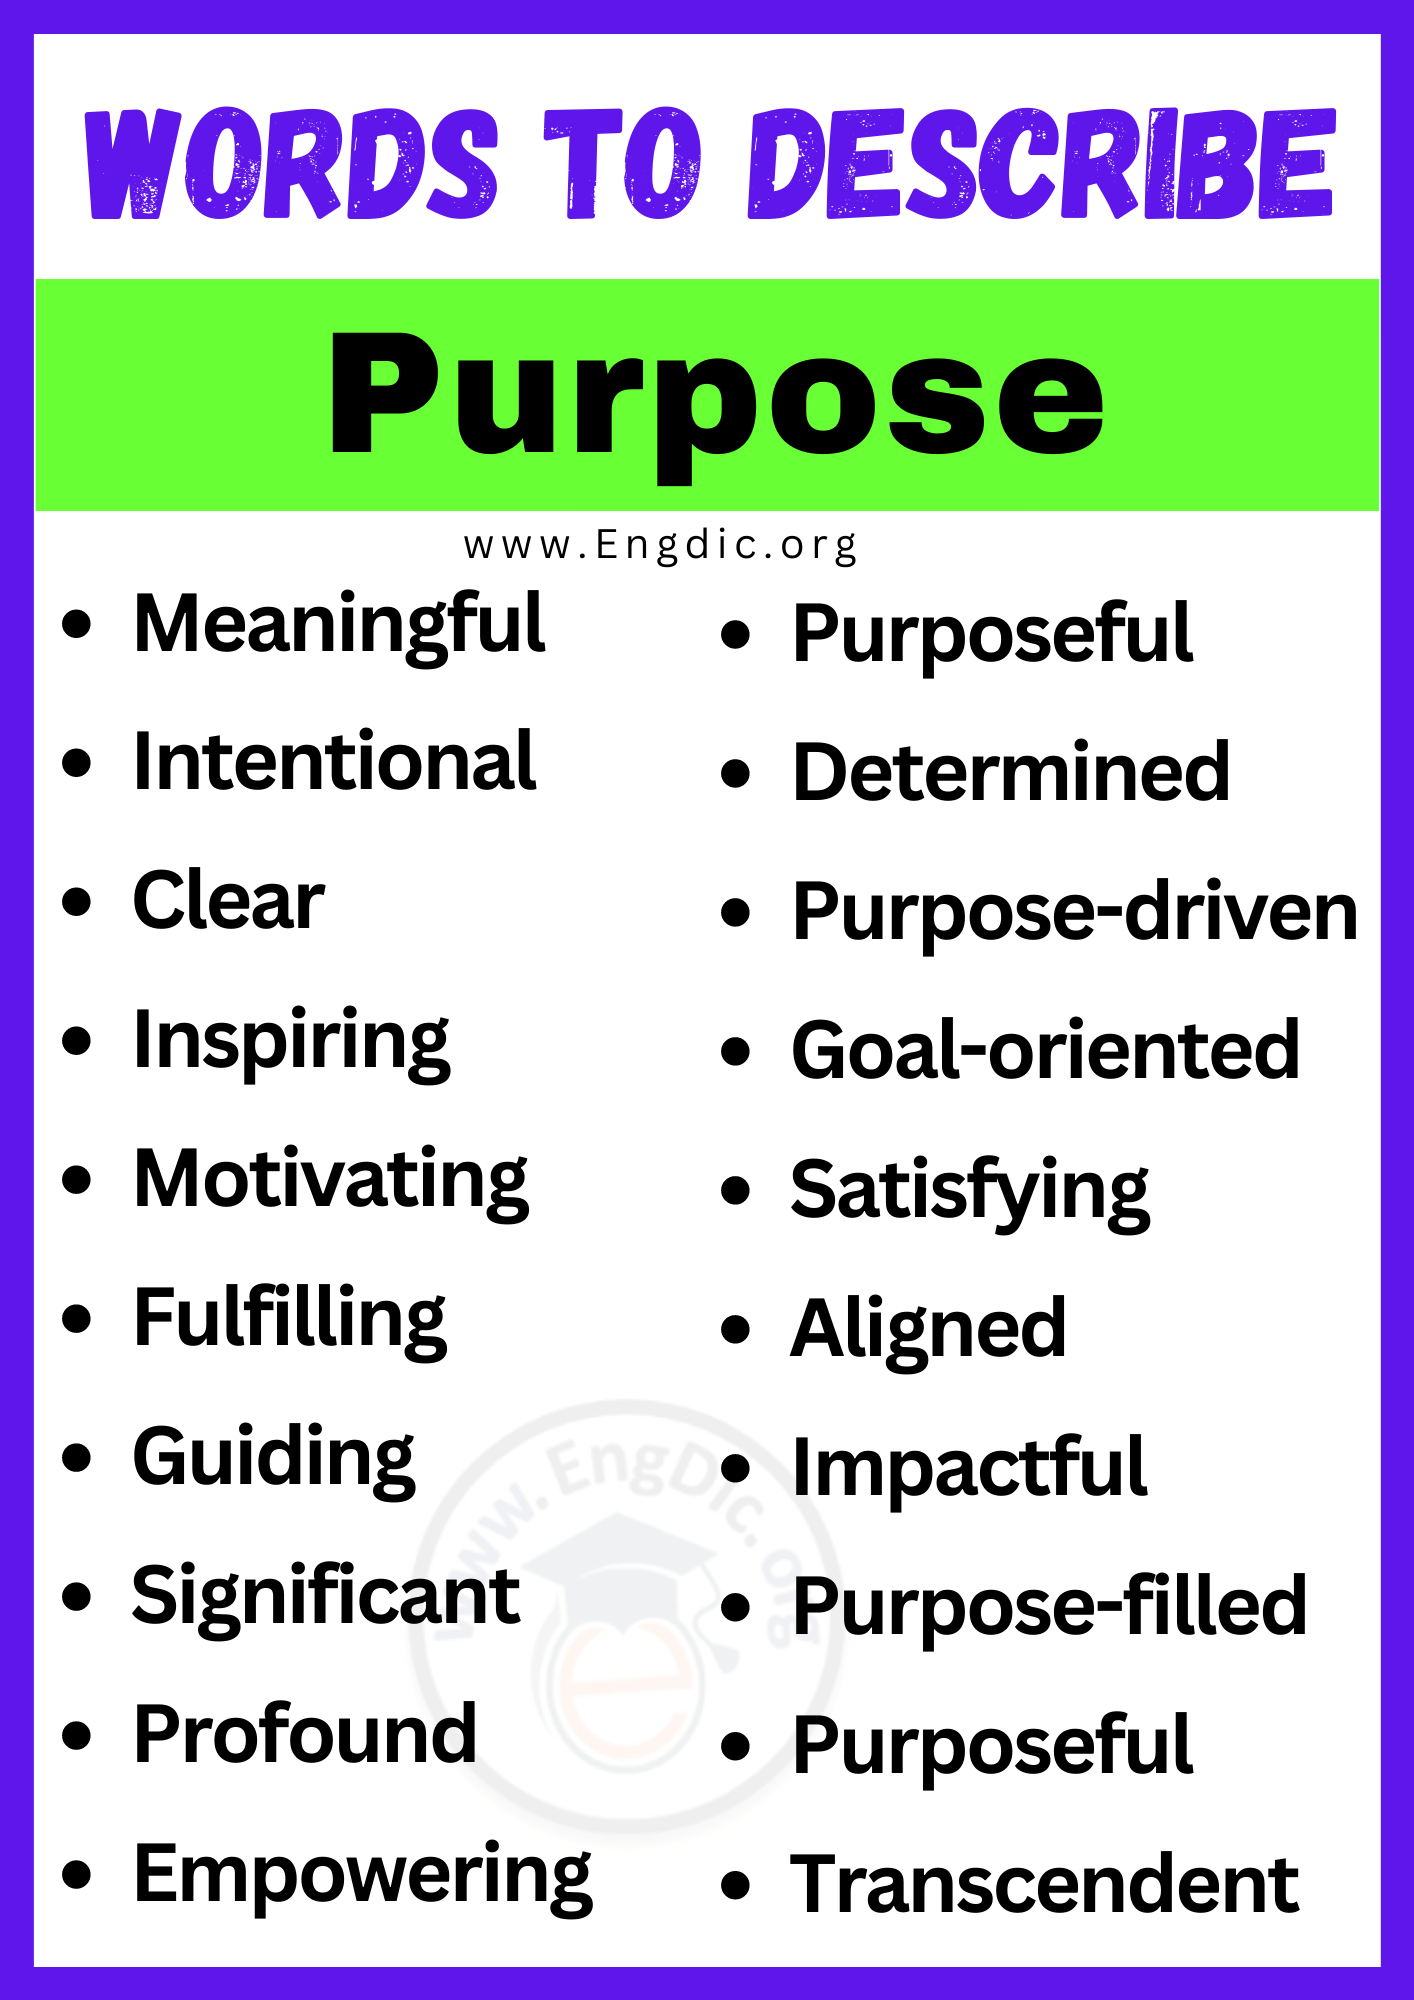 Words to Describe Purpose